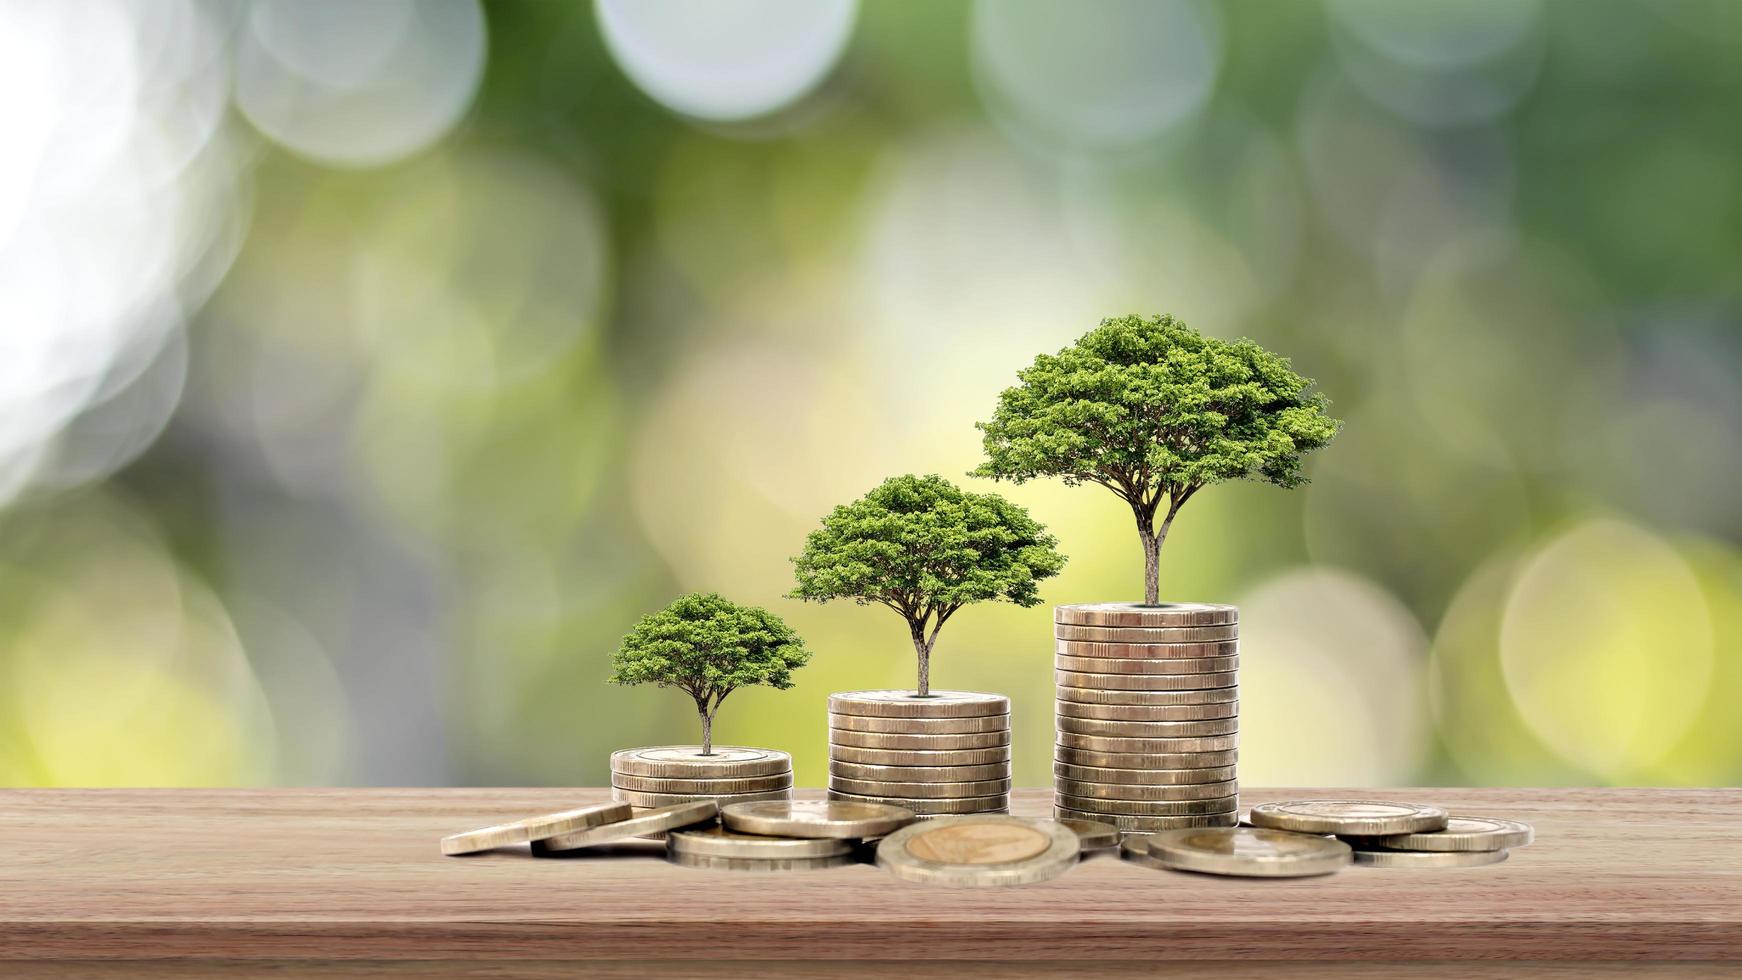 l'albero cresce su una pila di soldi su un tavolo in legno e sfondo naturale, il concetto di investimento finanziario ed espansione economica foto